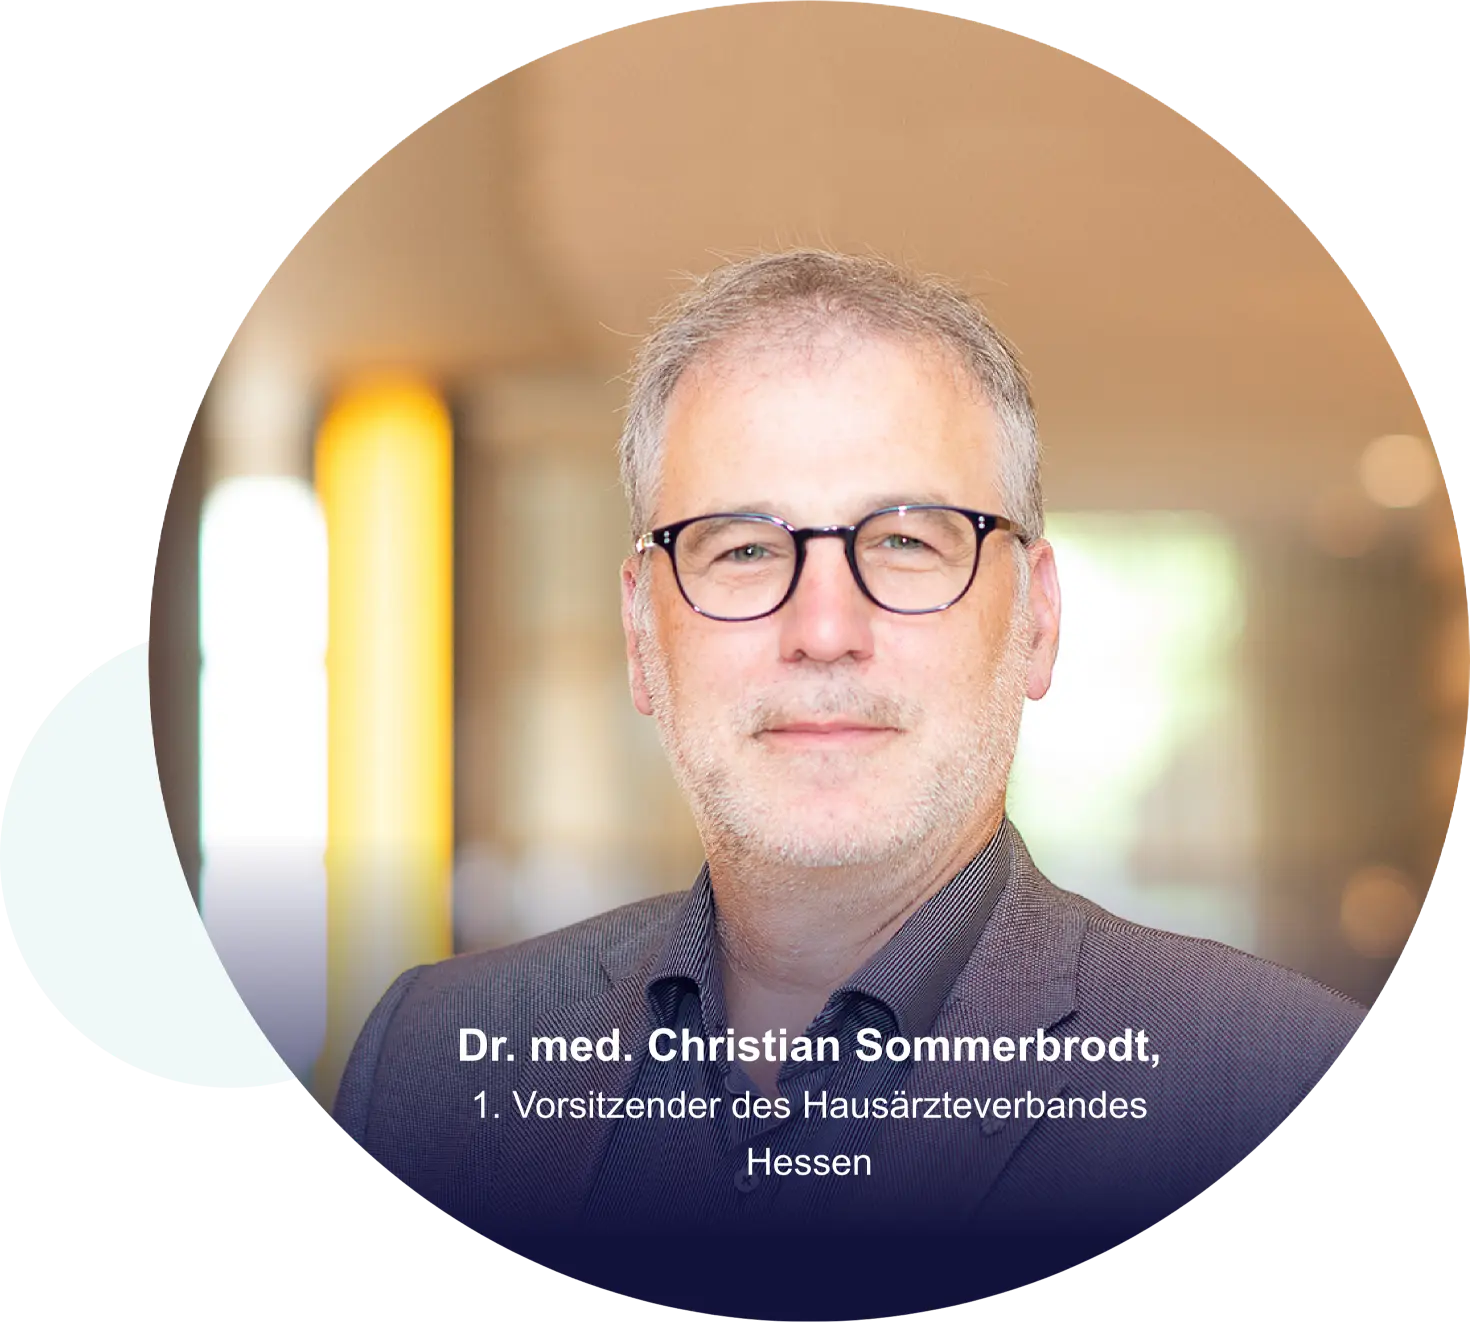 Dr. med. Christian Sommerbrodt